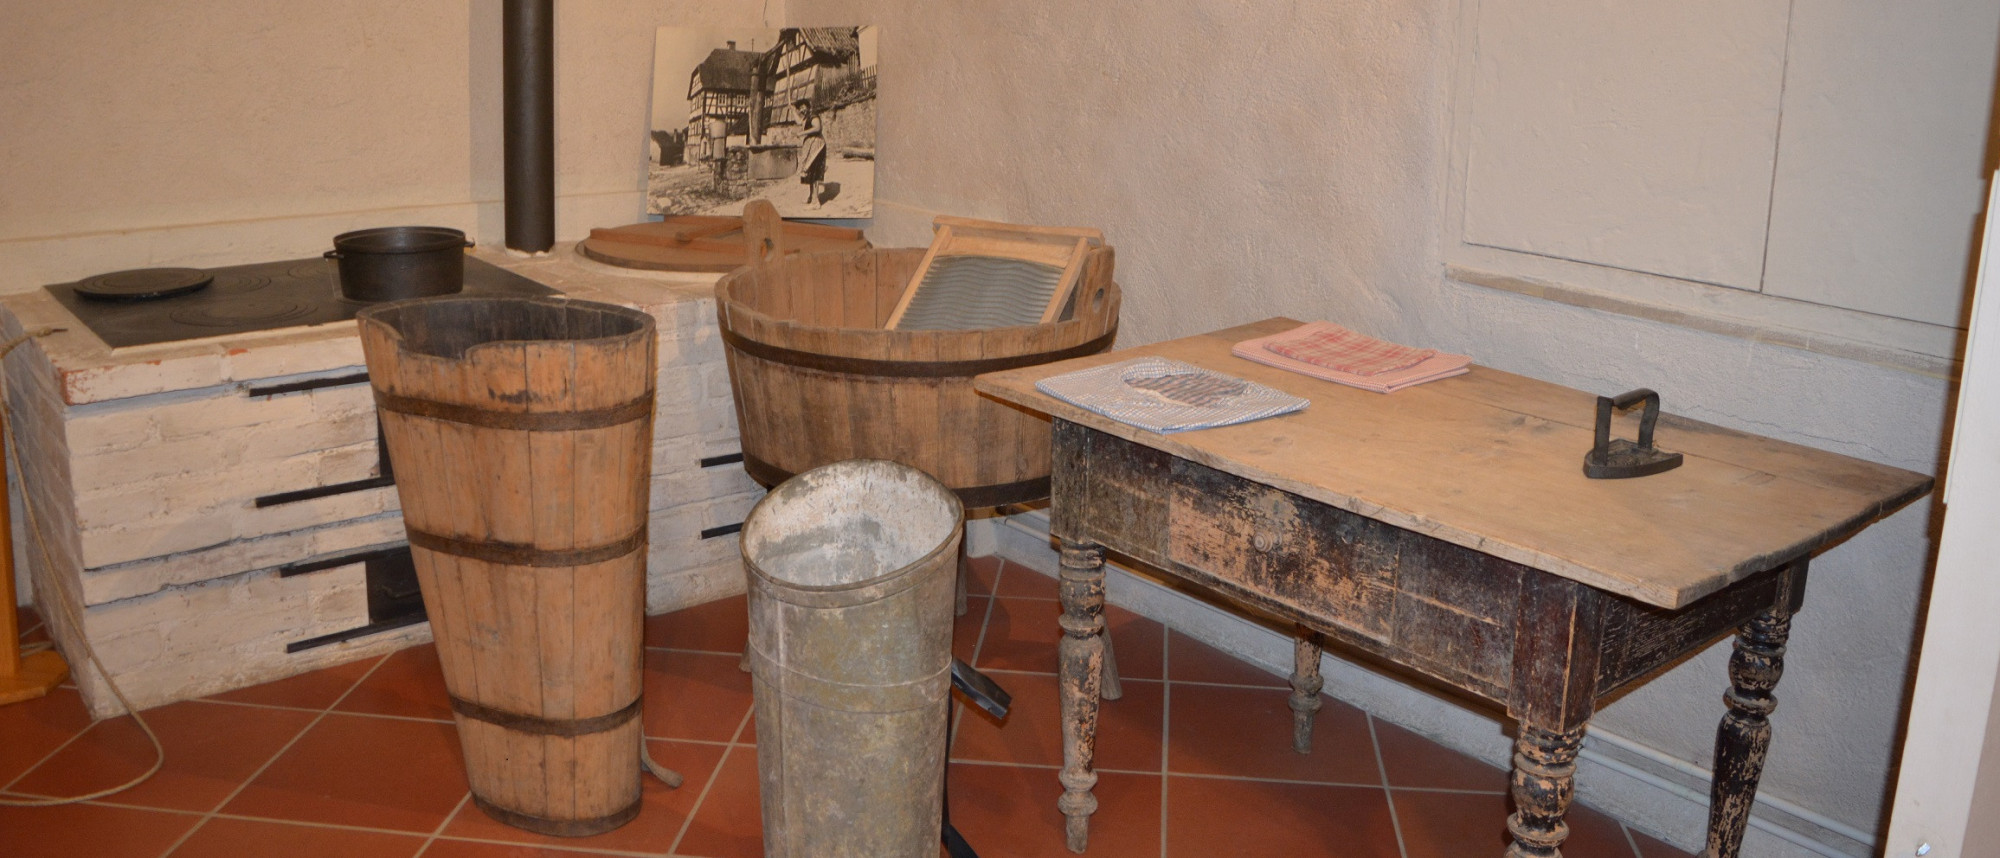 Blick in einen Ausstellungsraum im Volkskundemuseum. Rechts steht ein großer Tisch mit einem alten Glätteisen. Links daneben stehen Waschzuber und ein Herd mit Waschkessel.